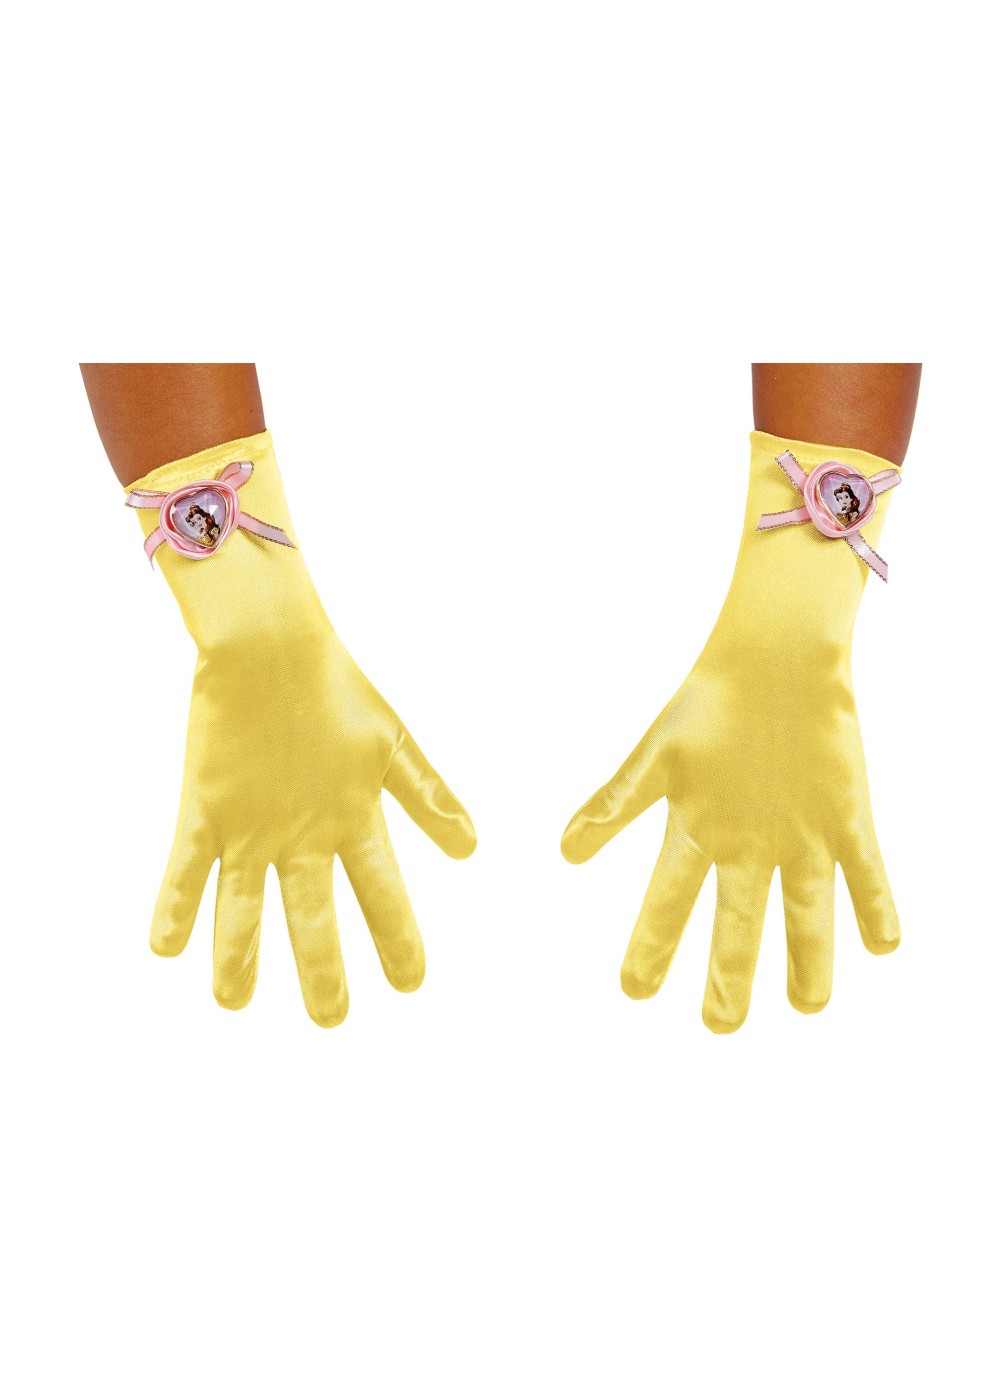 Girls Belle Costume Gloves